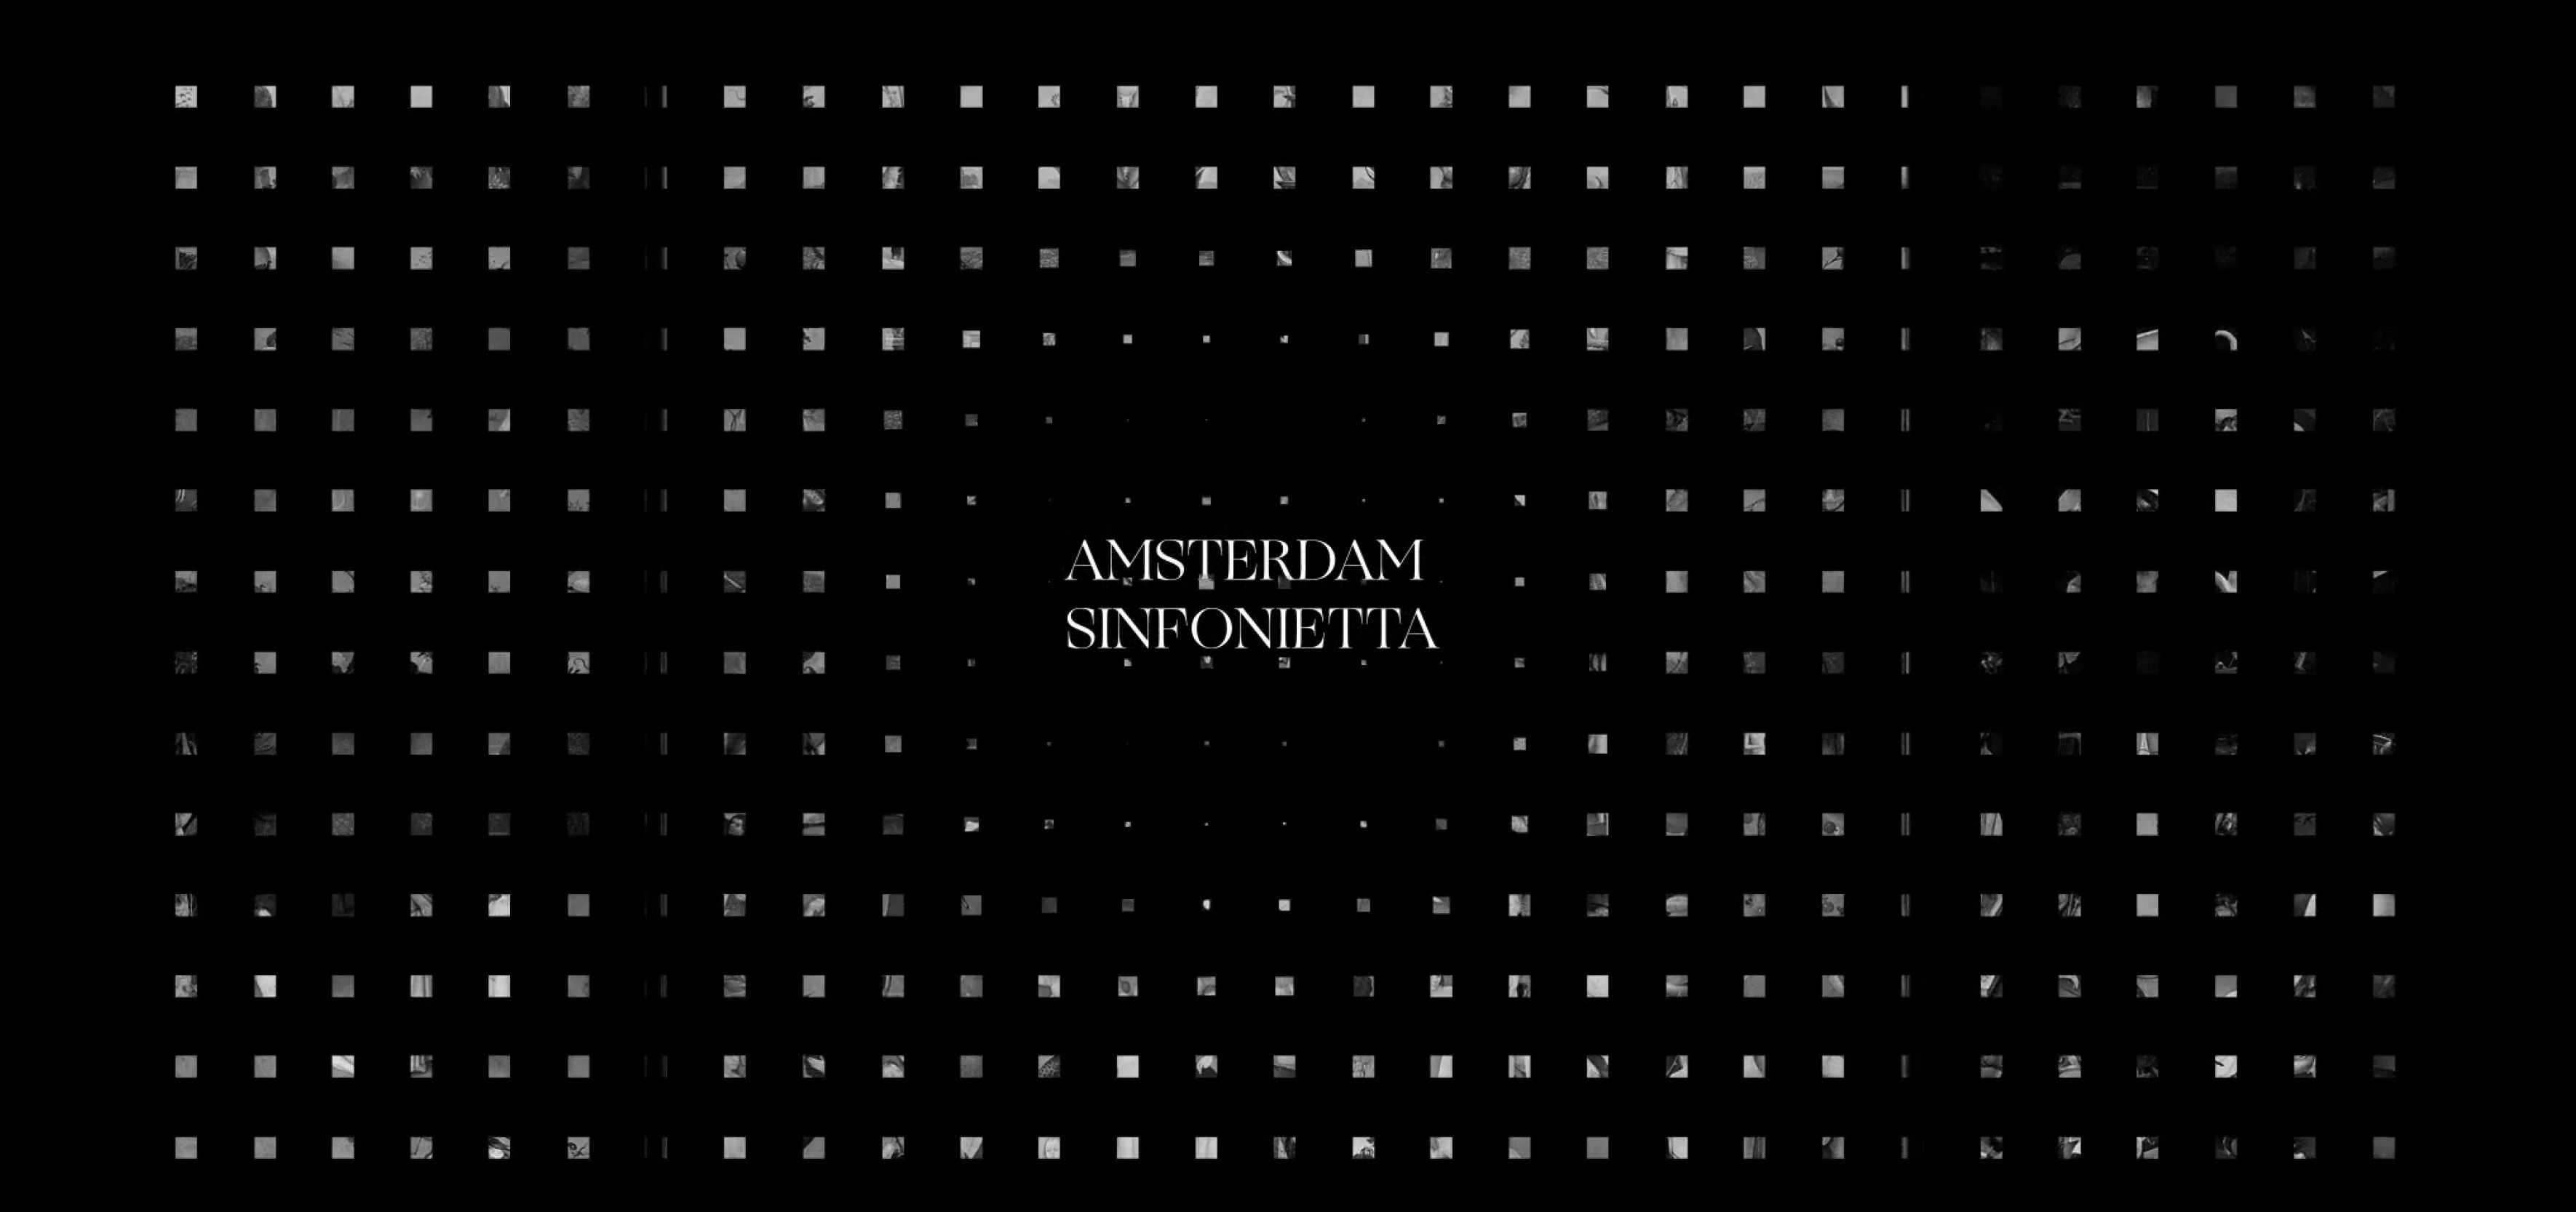 amsterdam sinfonietta microsite opening screen